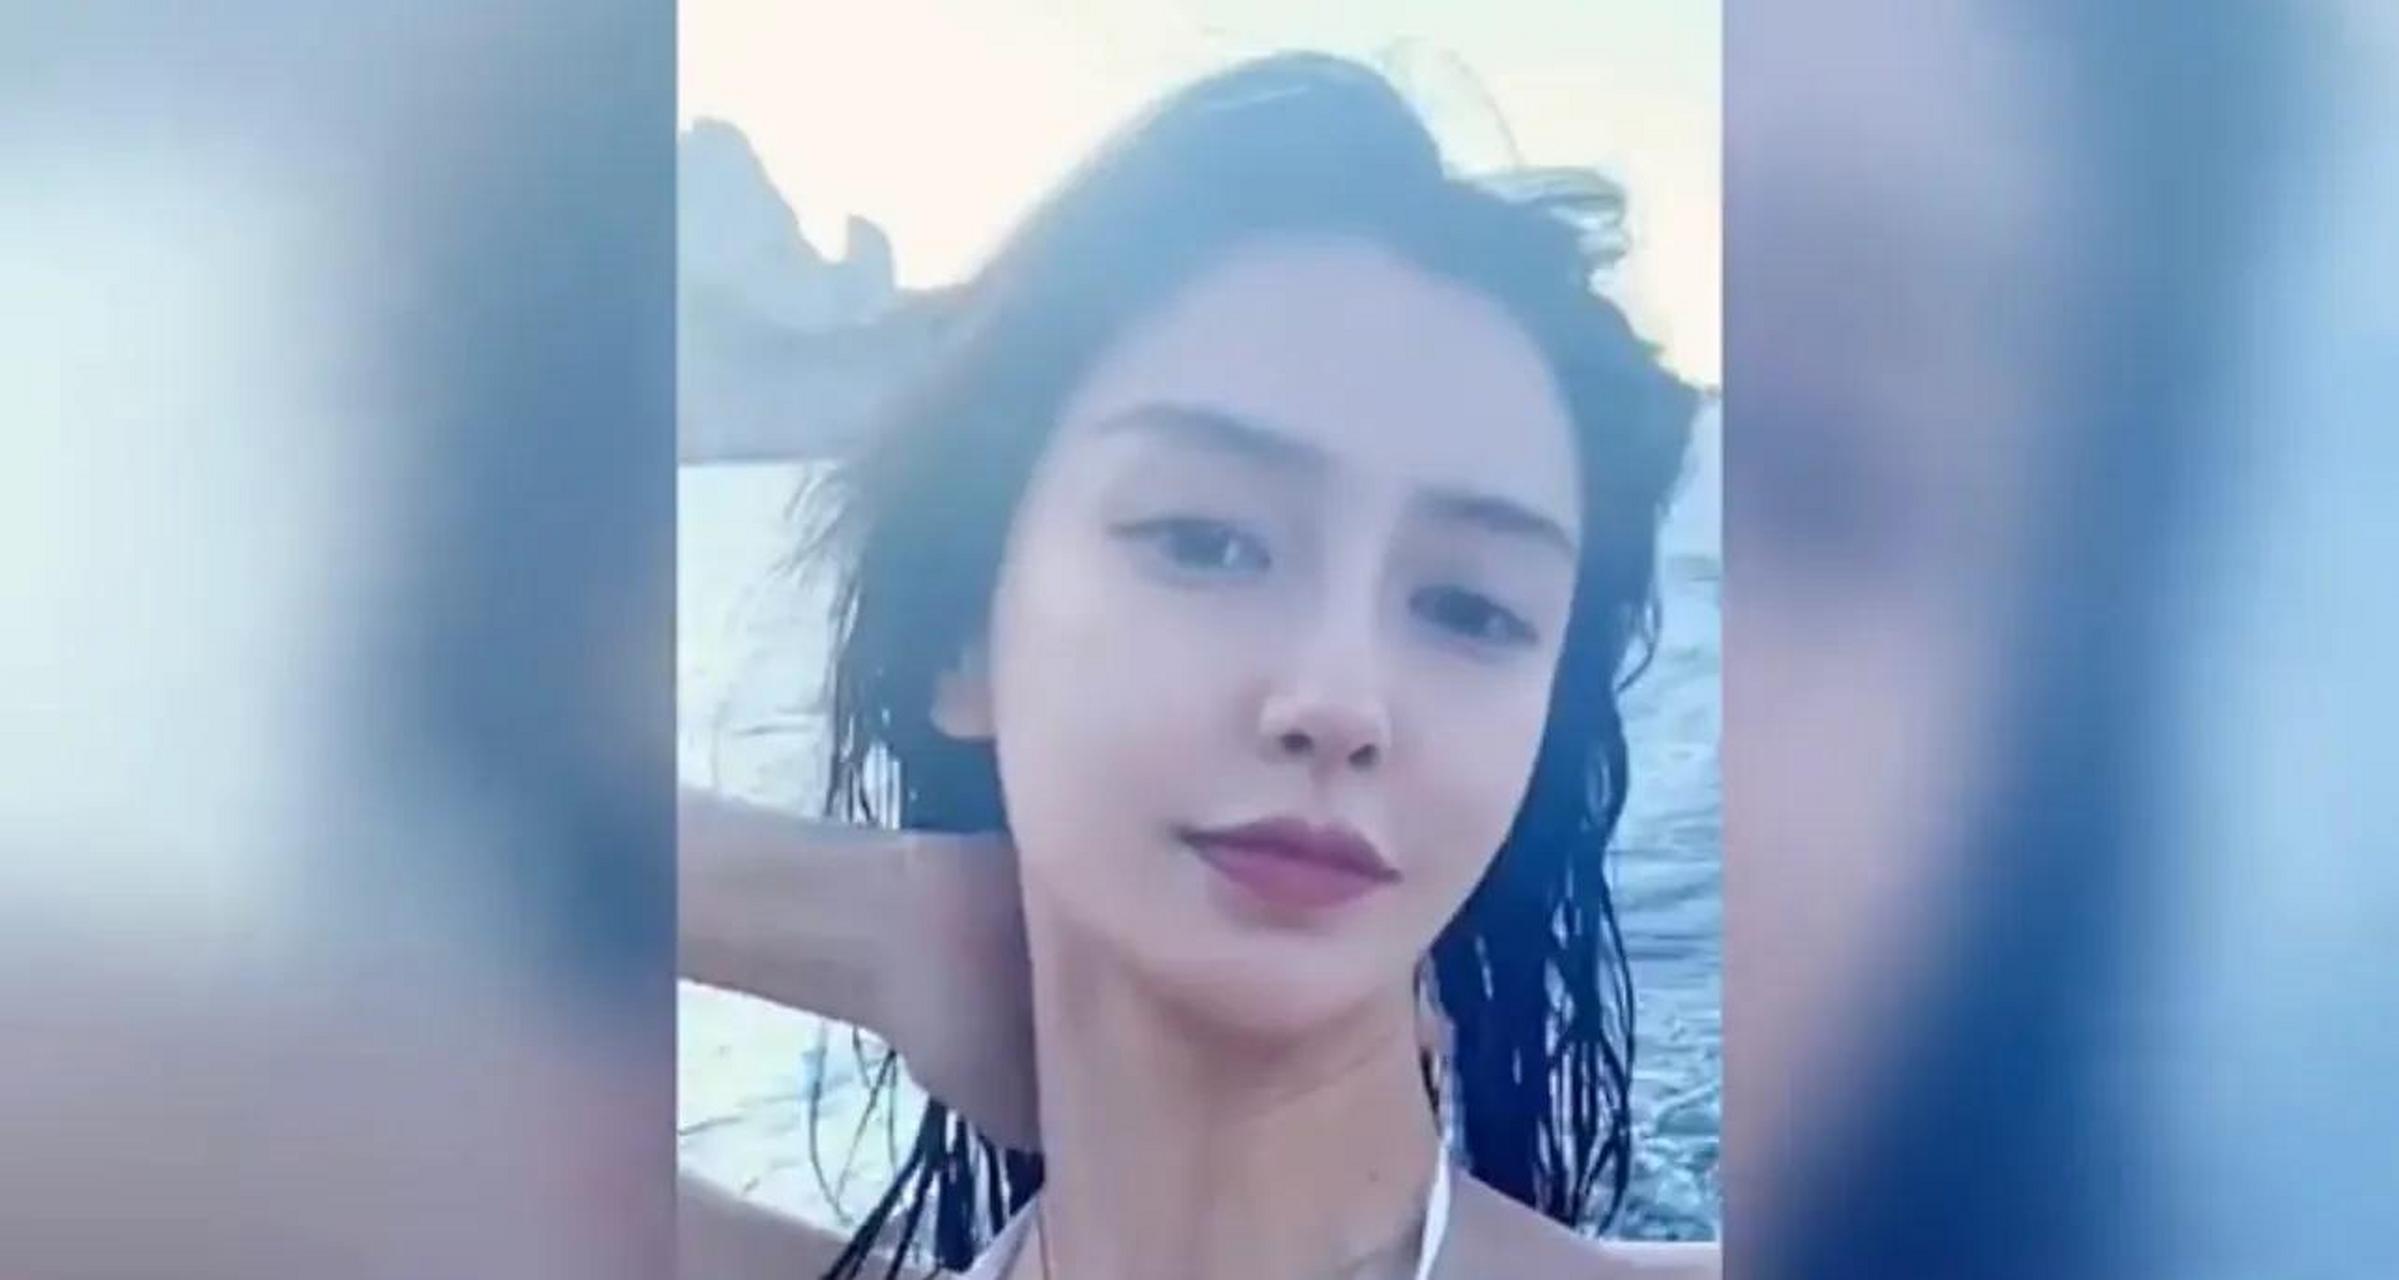 SNH48沙滩泳装图片